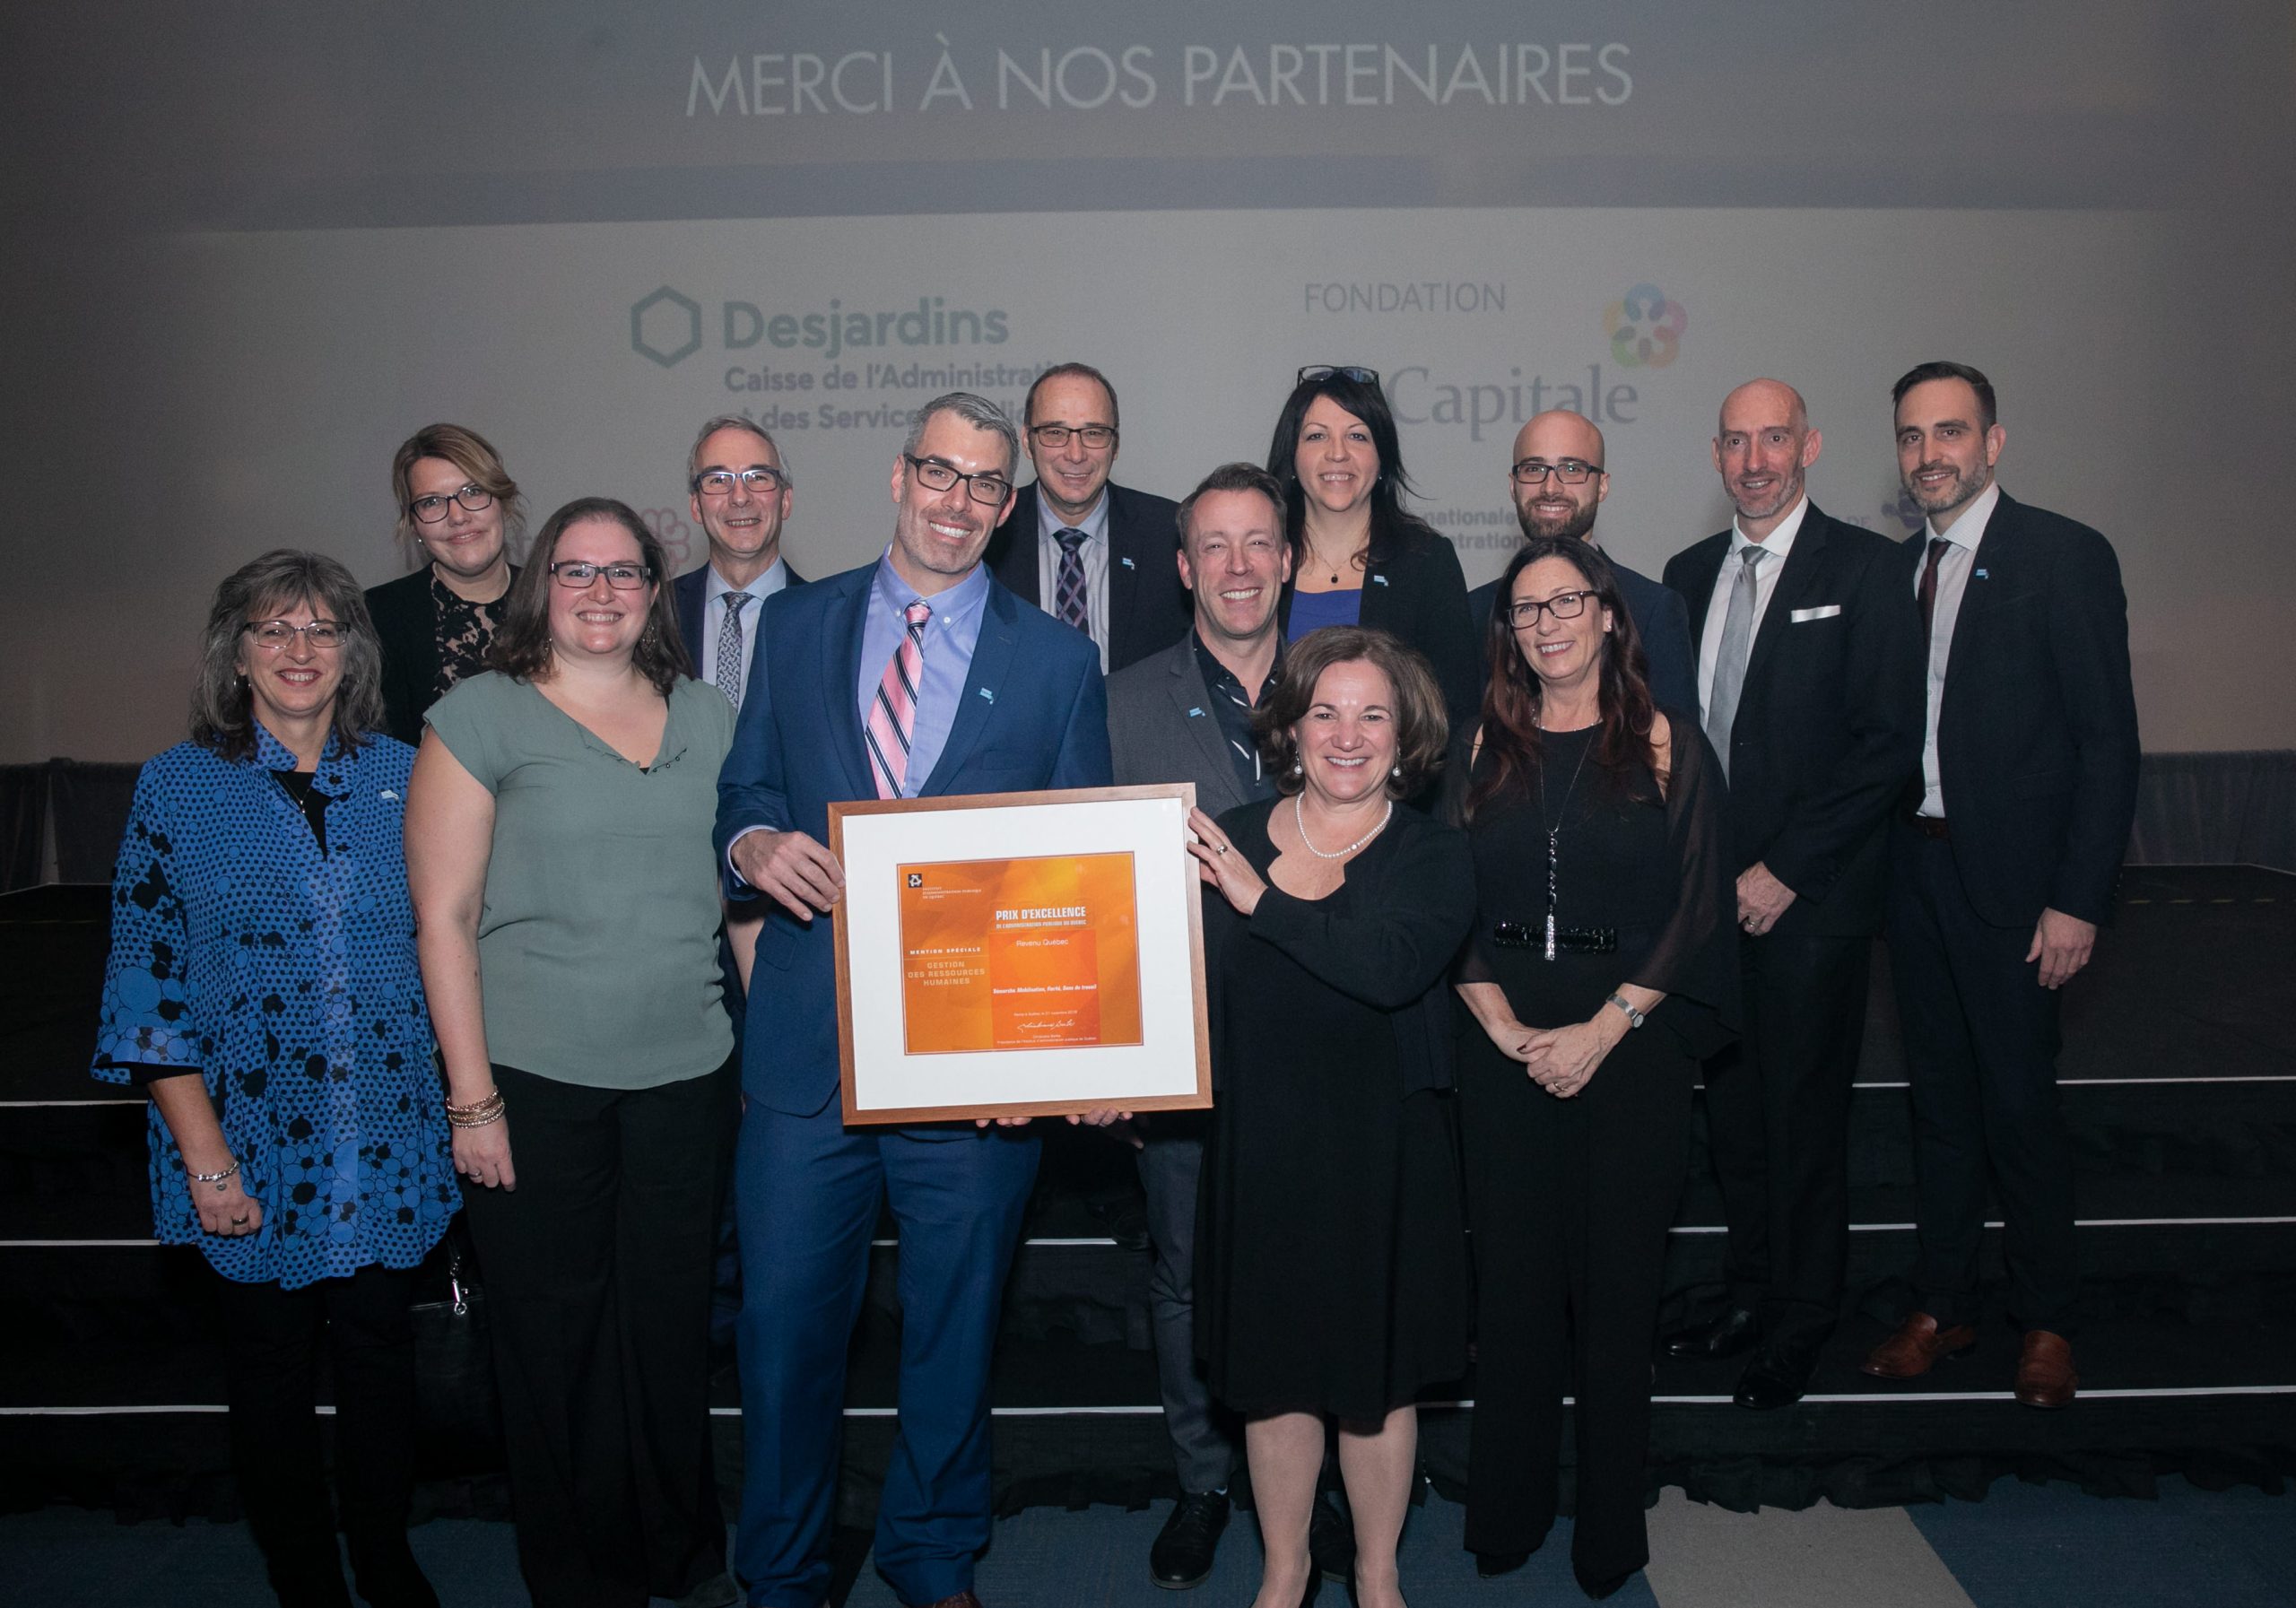 L'équipe de Revenu Québec, finaliste au prix Gestion des Ressources humaines